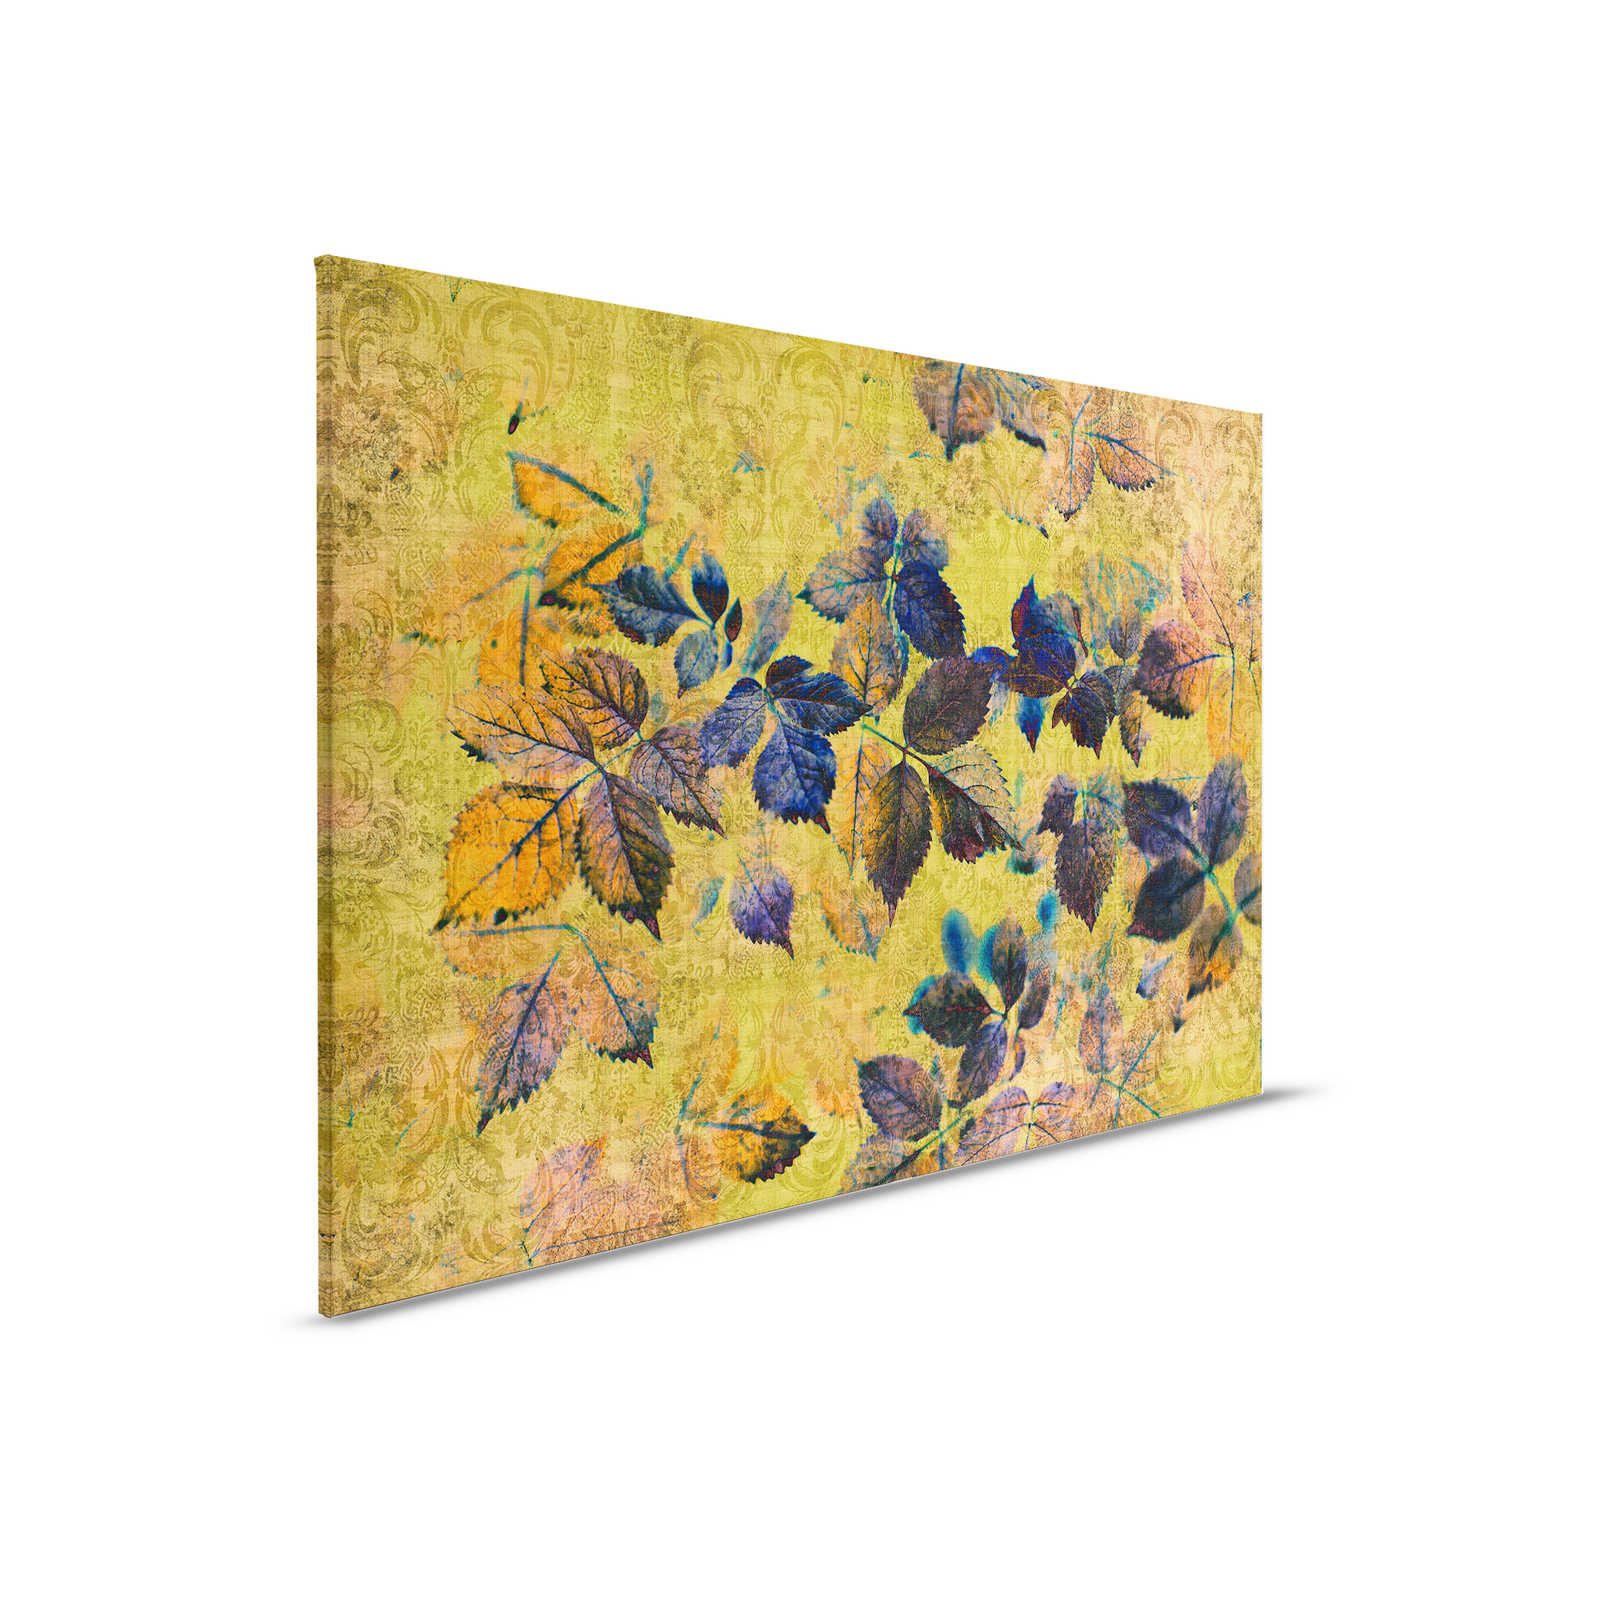 Verano indio 1 - Cuadro en lienzo con hojas y adornos en estructura de lino natural - 0,90 m x 0,60 m
